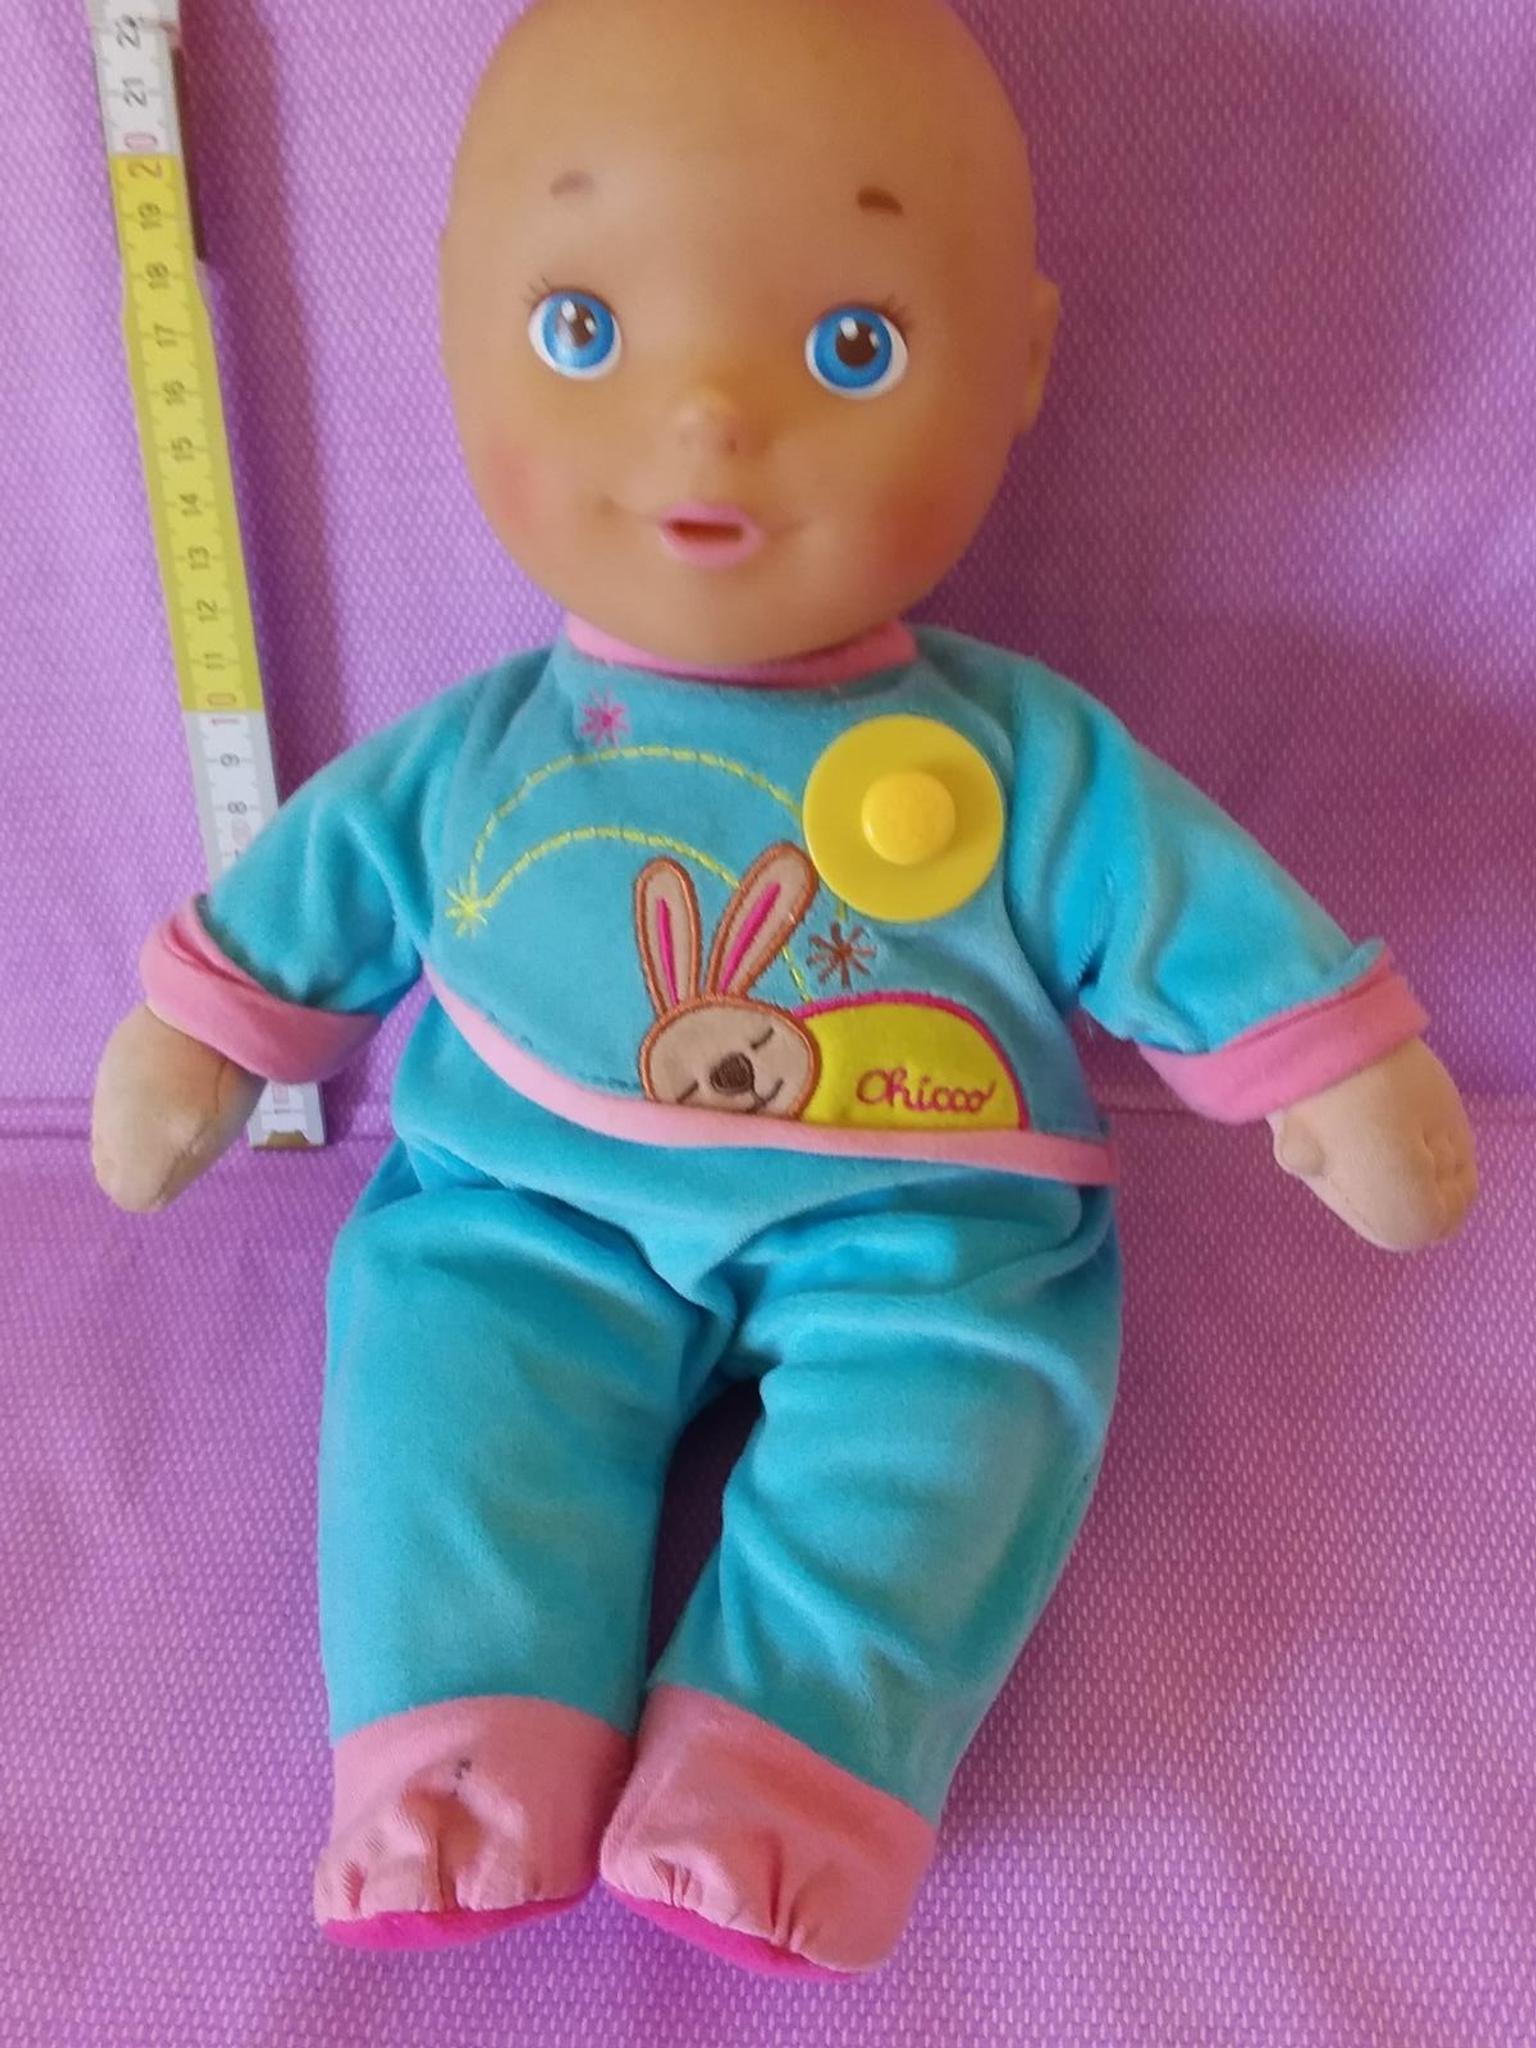 cicciobello doll